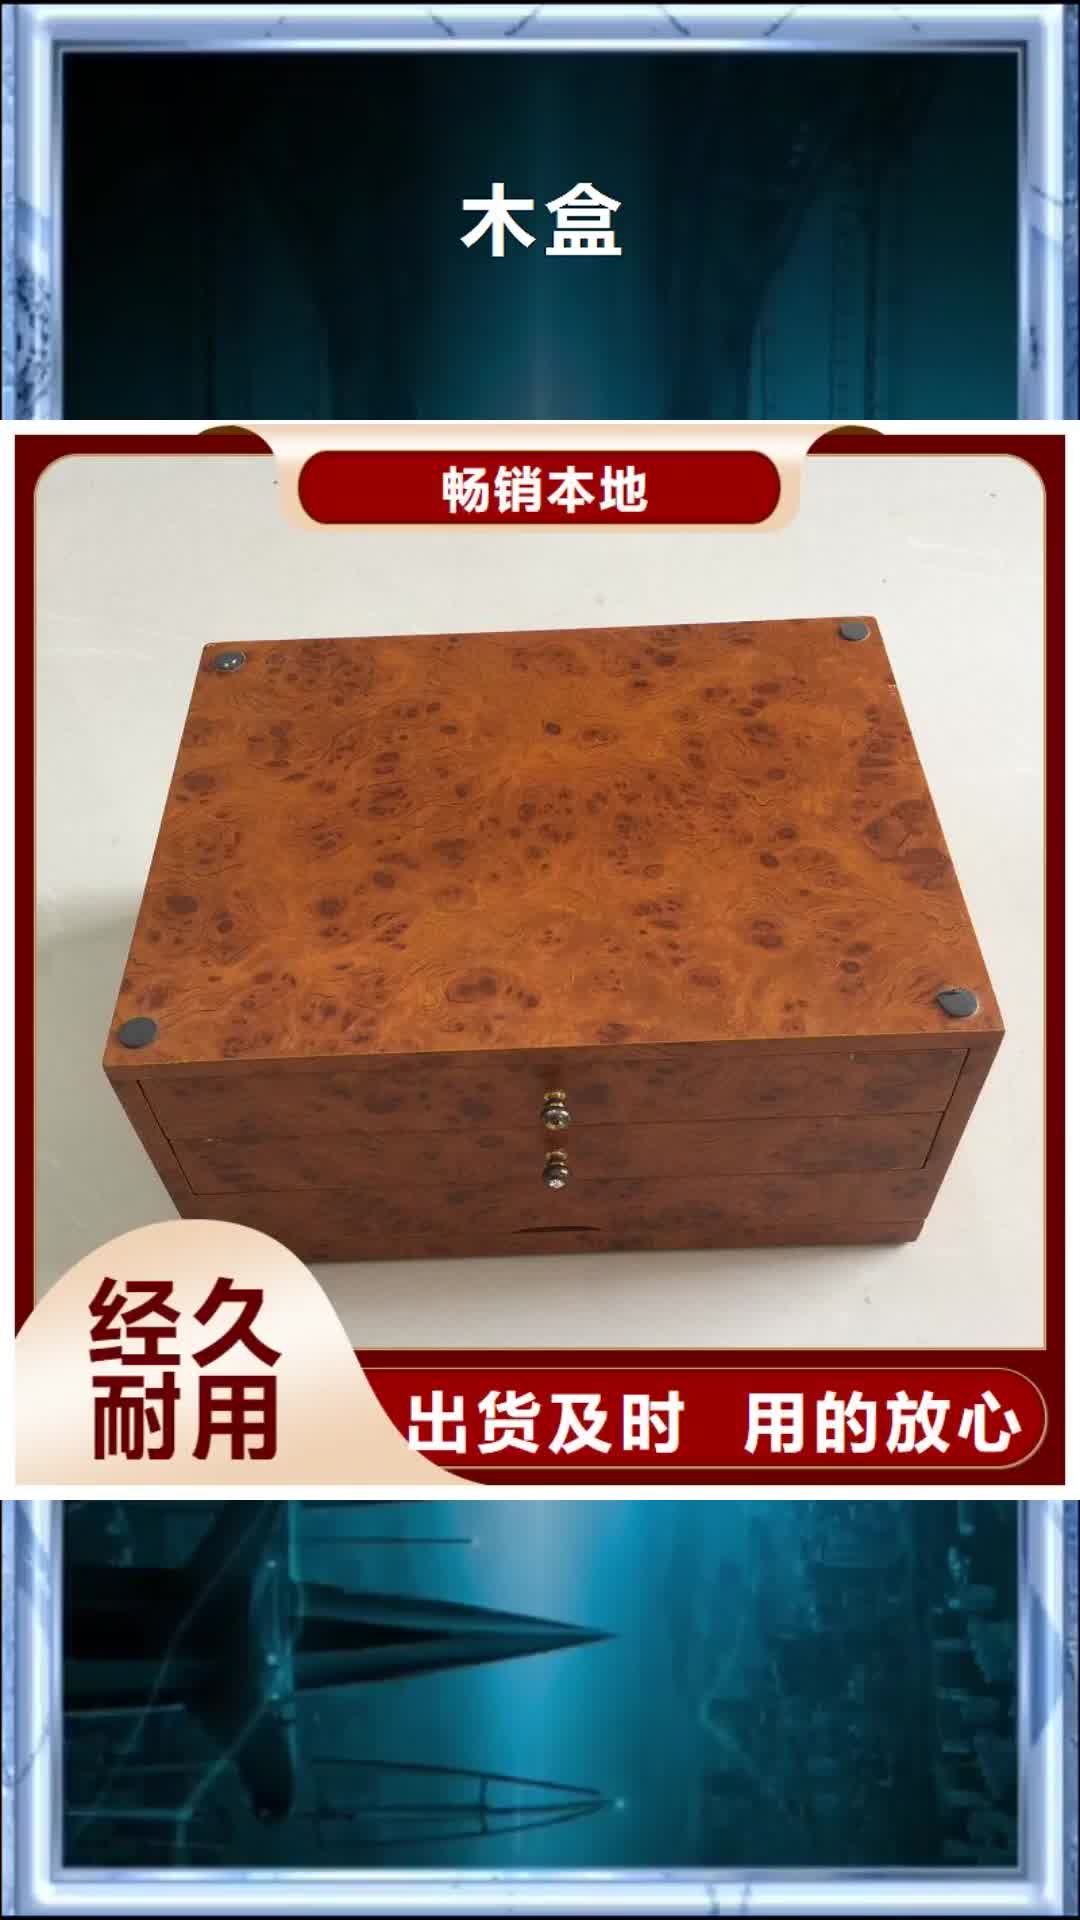 赤峰【木盒】,评级币标签购买的是放心